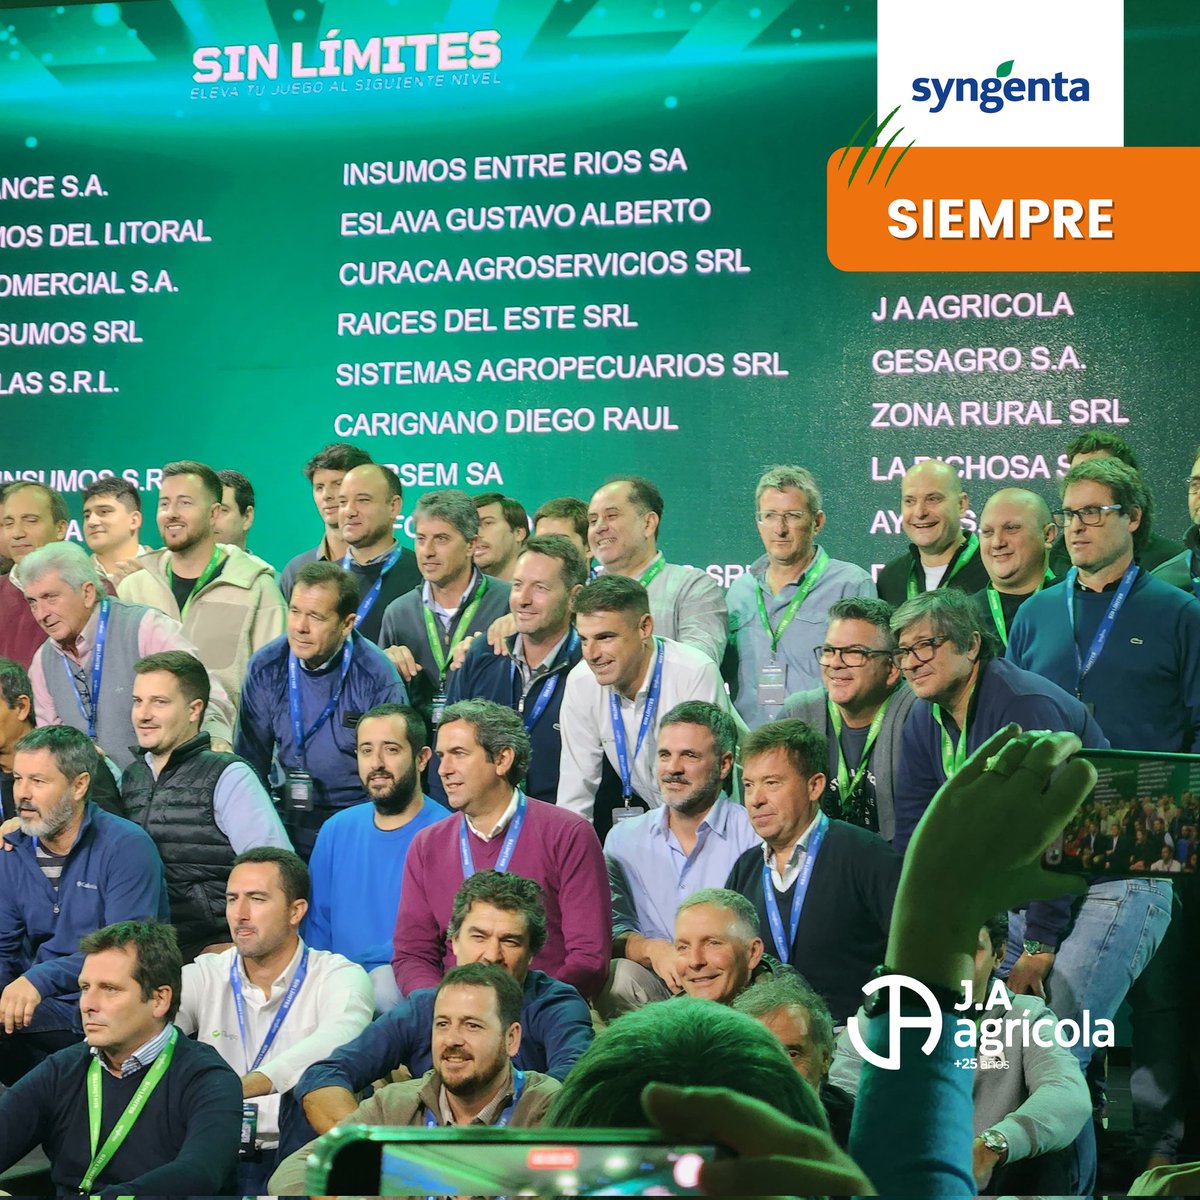 📍CONVENCIÓN ANUAL DE DISTRIBUIDORES @Syngenta_ar  #SinLímites 🔝
#JAAgrícola +25Años